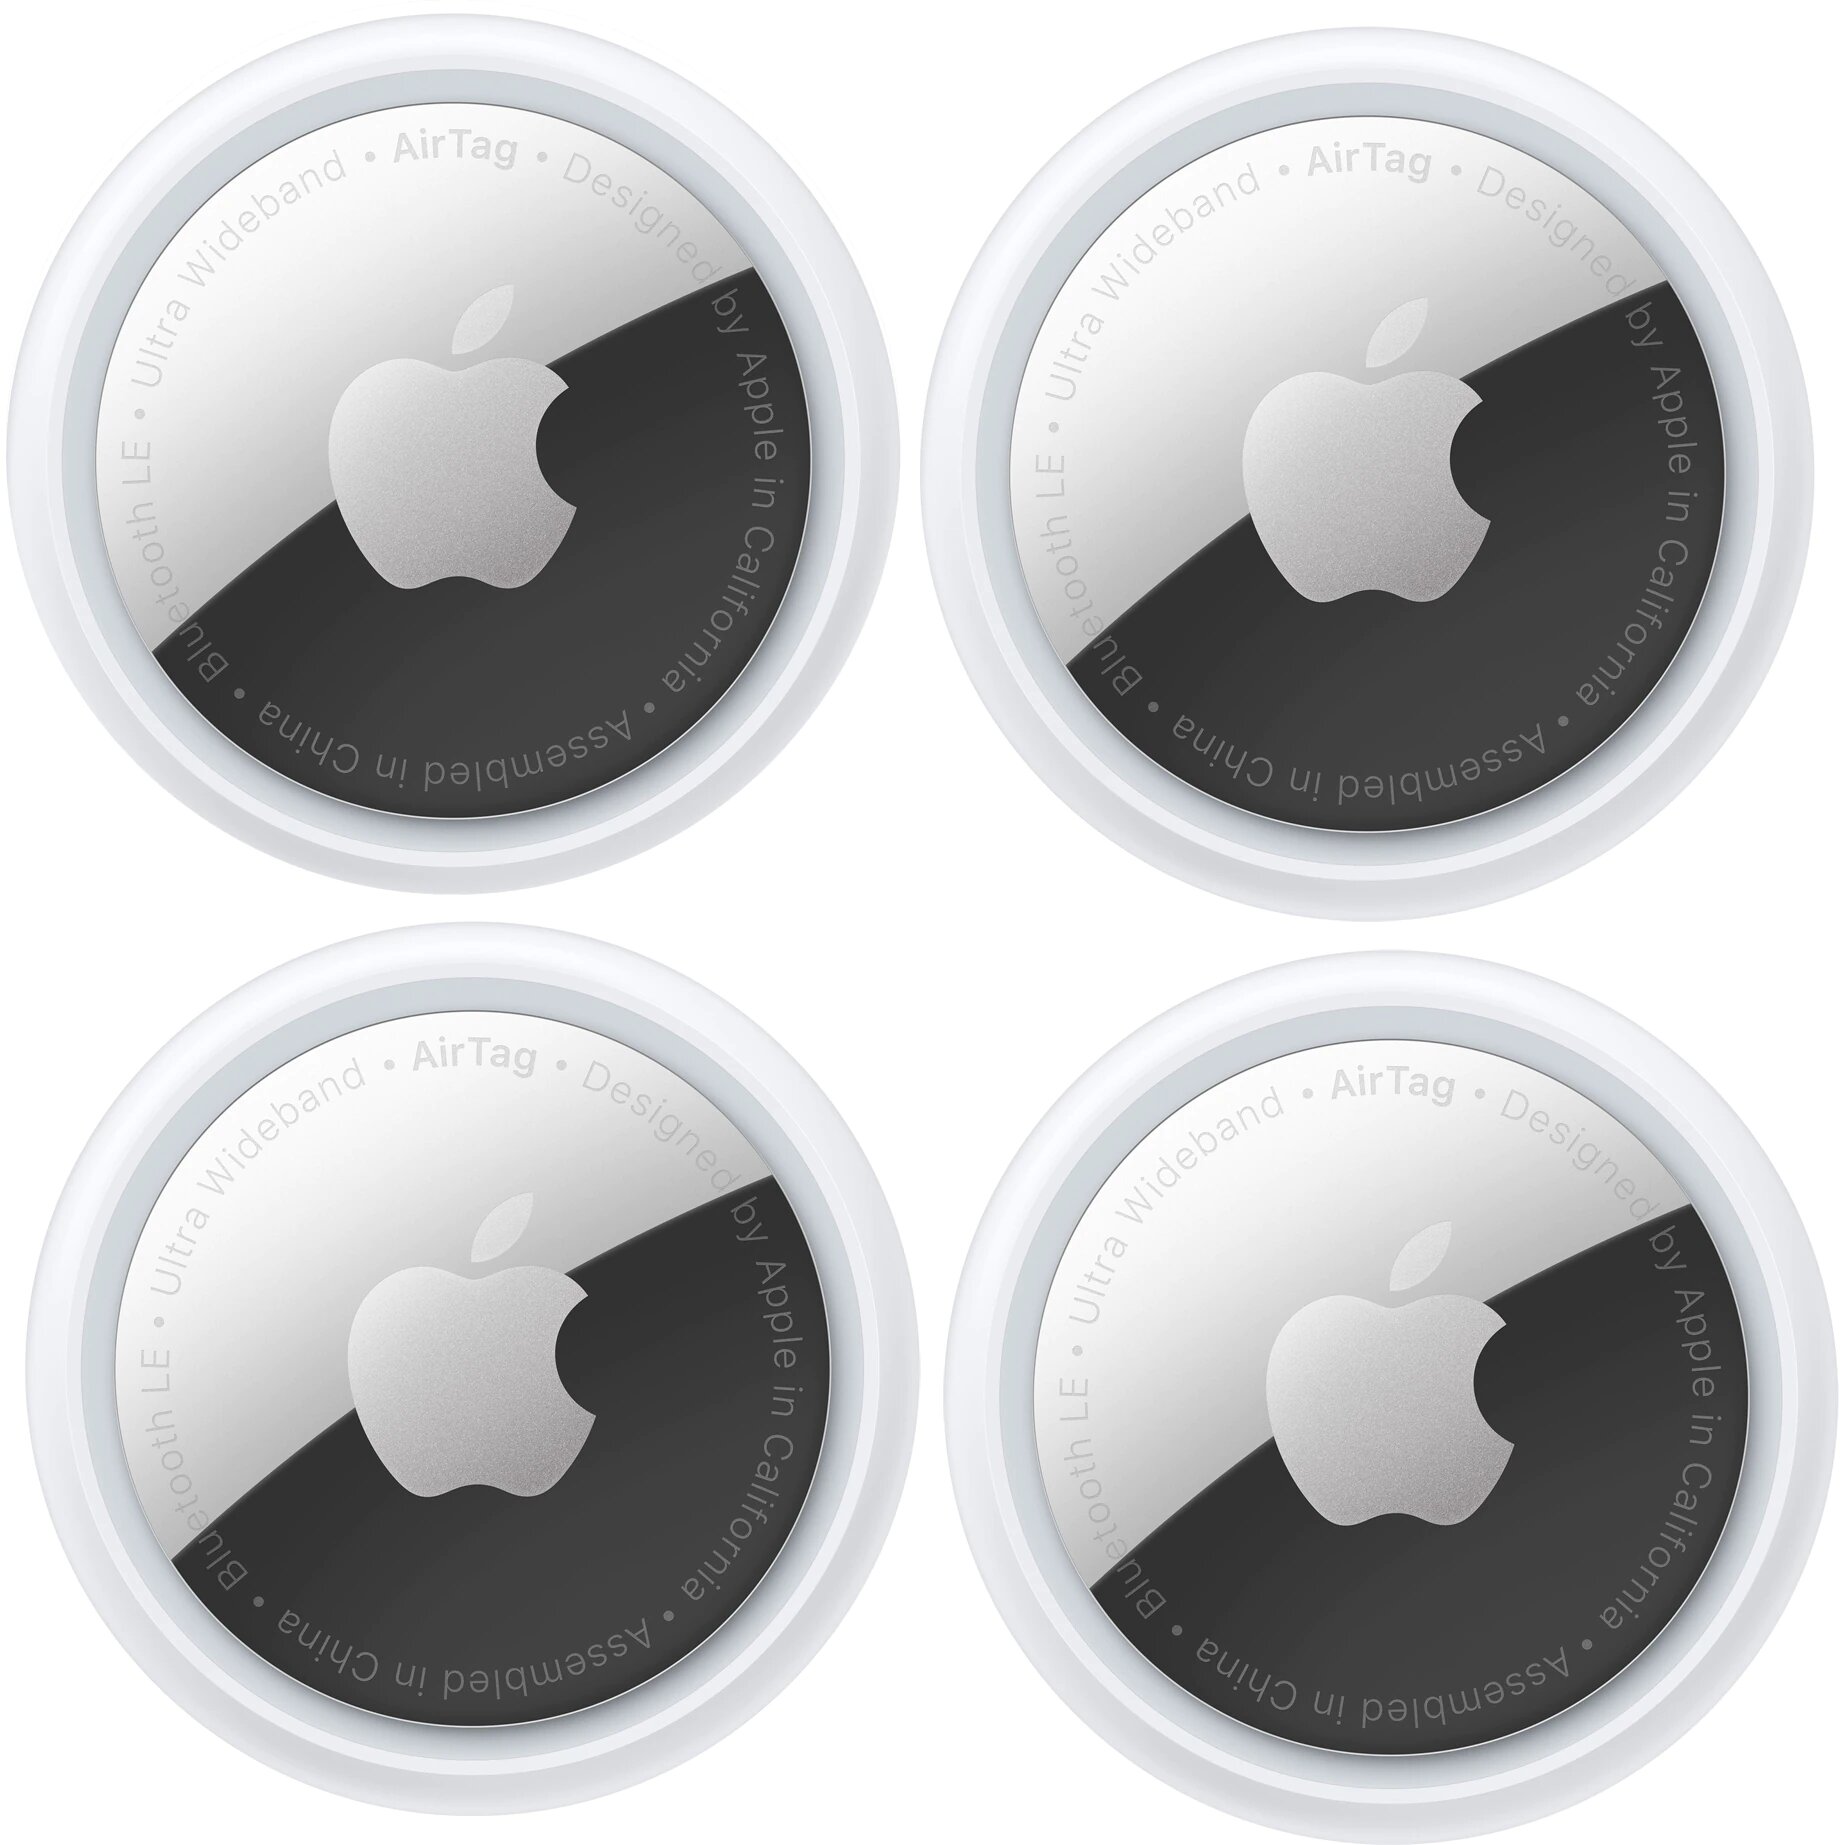 Трекер Apple AirTag для модели iPhone и iPod touch с iOS 14.5 или новее; модели iPad с iPadOS 14.5 или новее